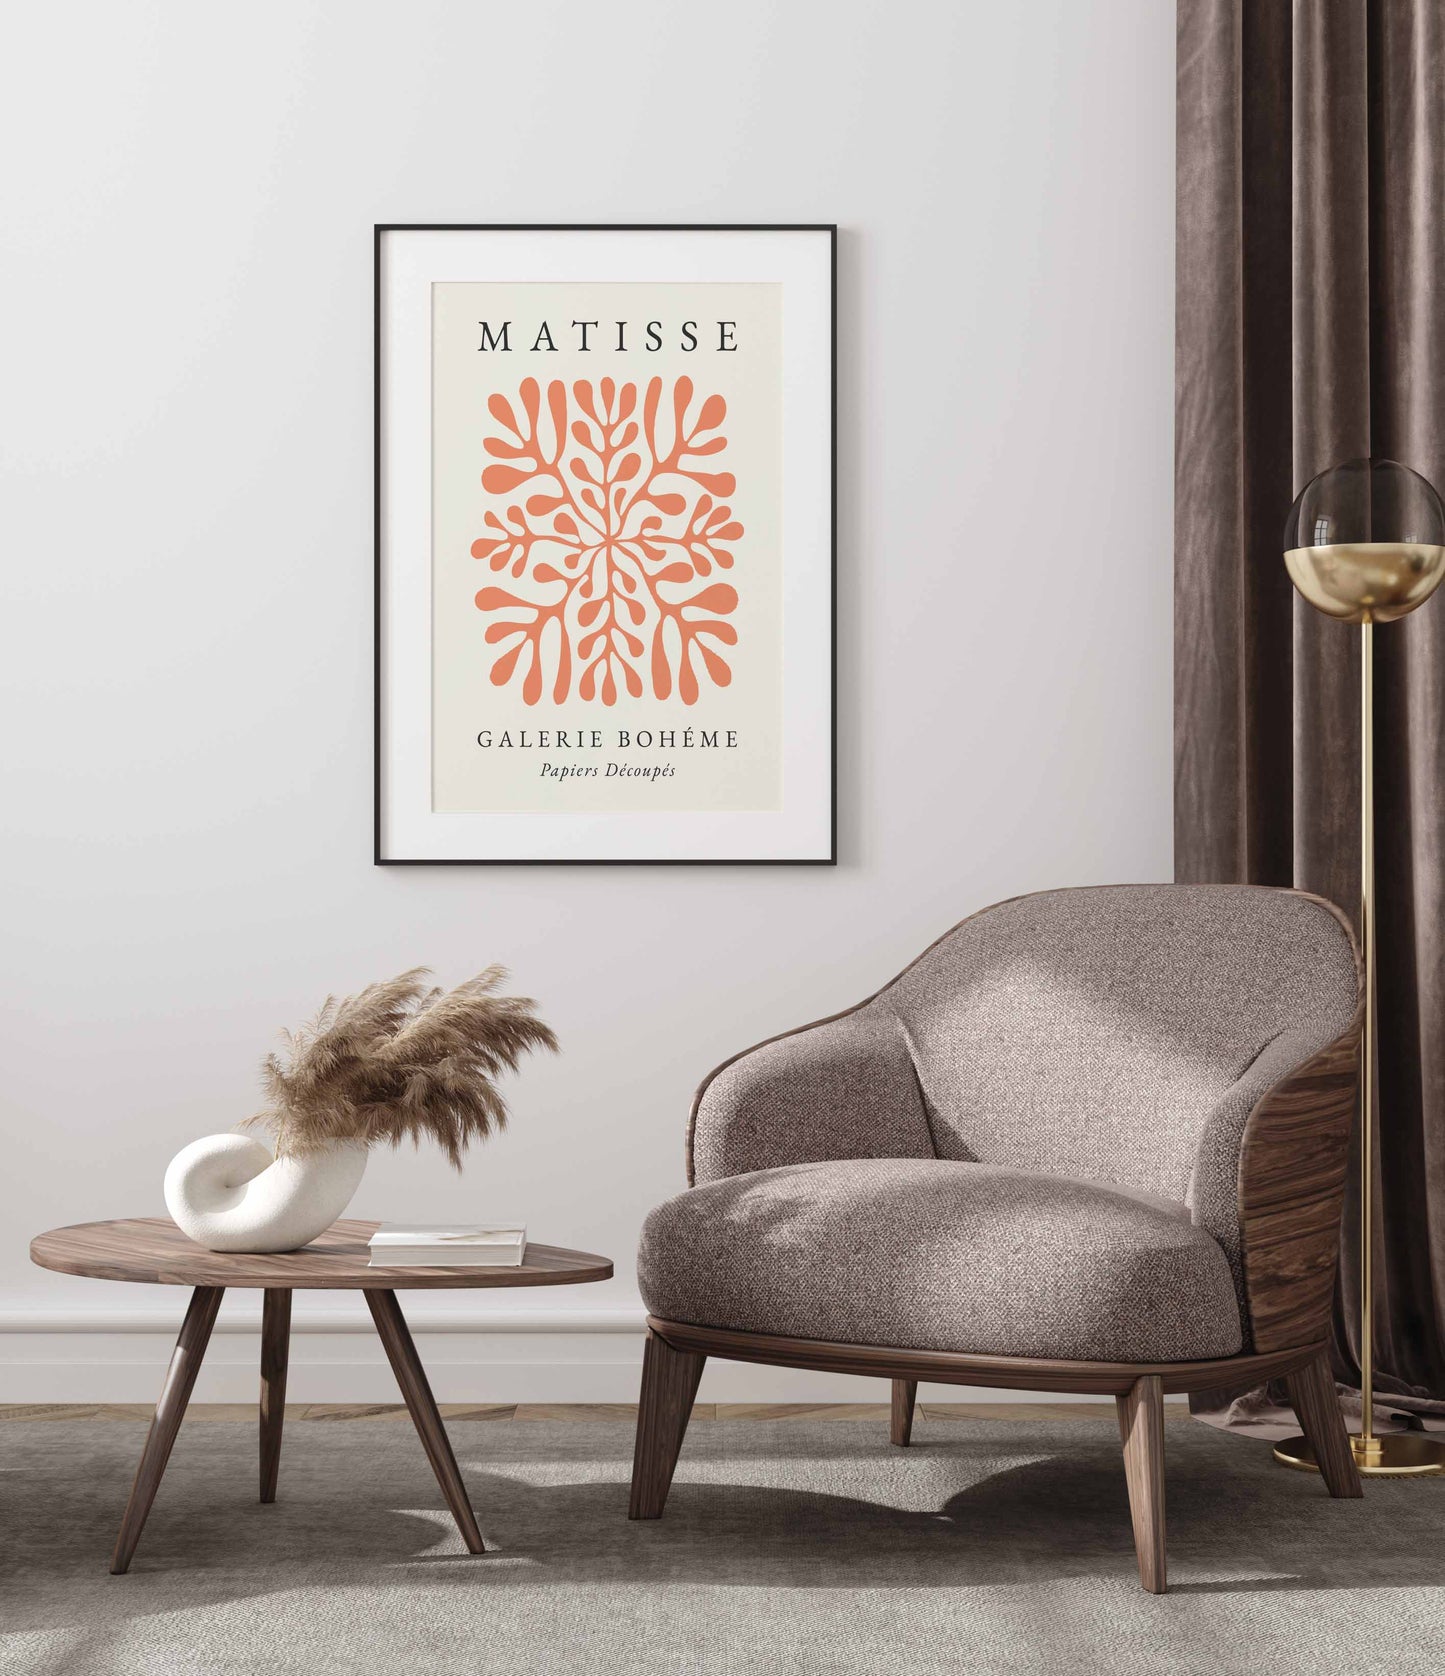 Orange Matisse poster in a minimalist style